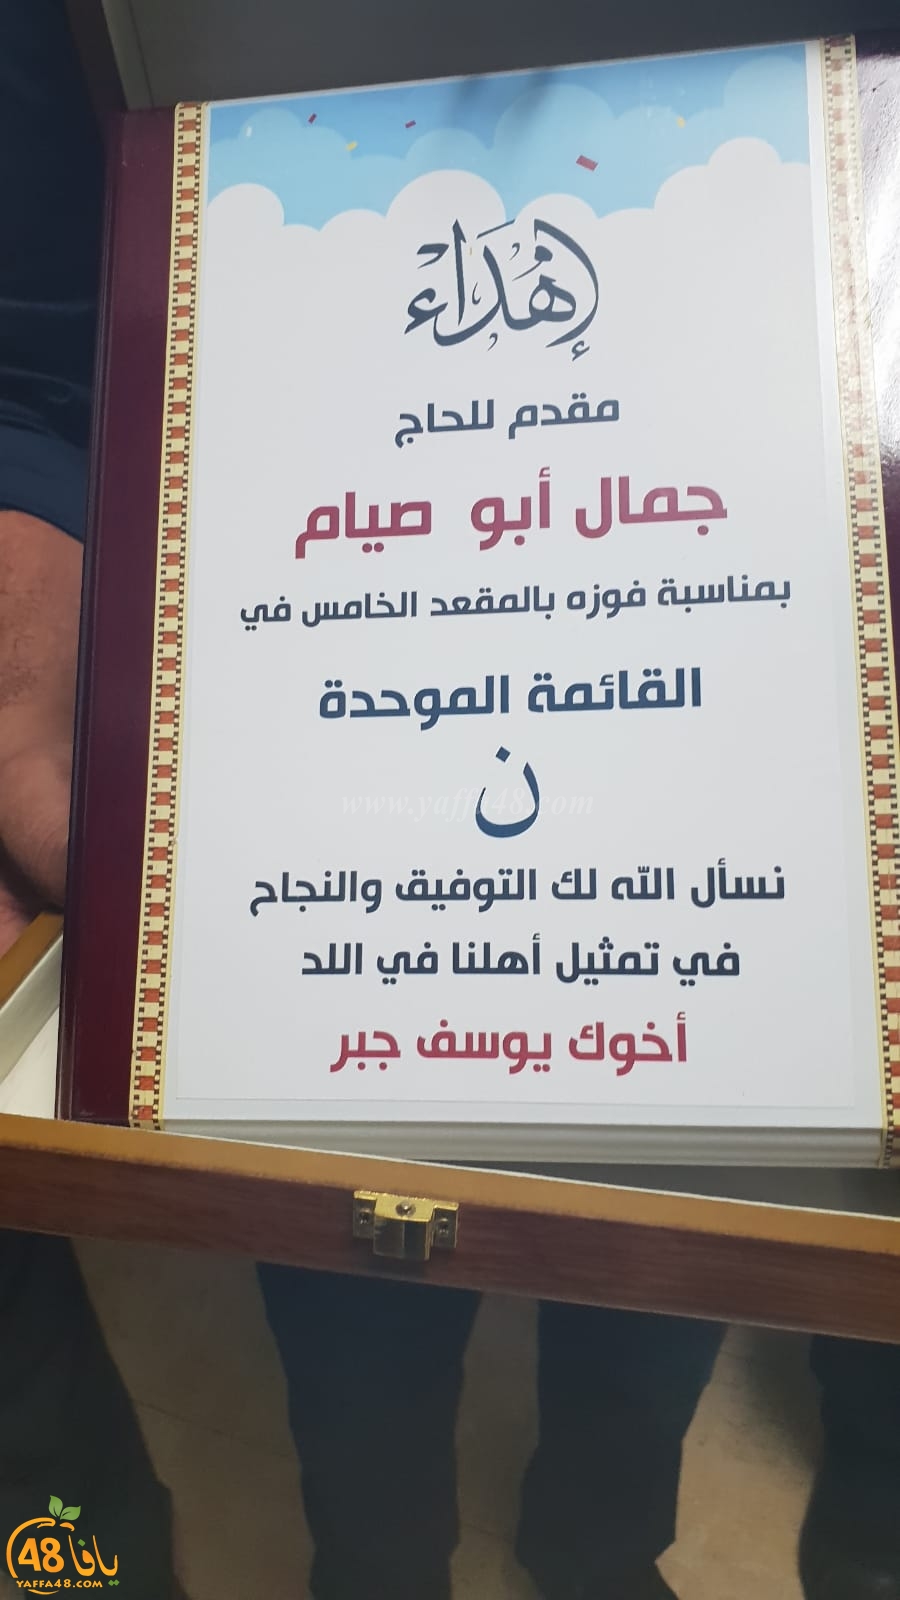  بالصور: قائمة النداء العربي اللداوية تُهنئ المهندس جمال ابو صيام بدخول المجلس البلدي